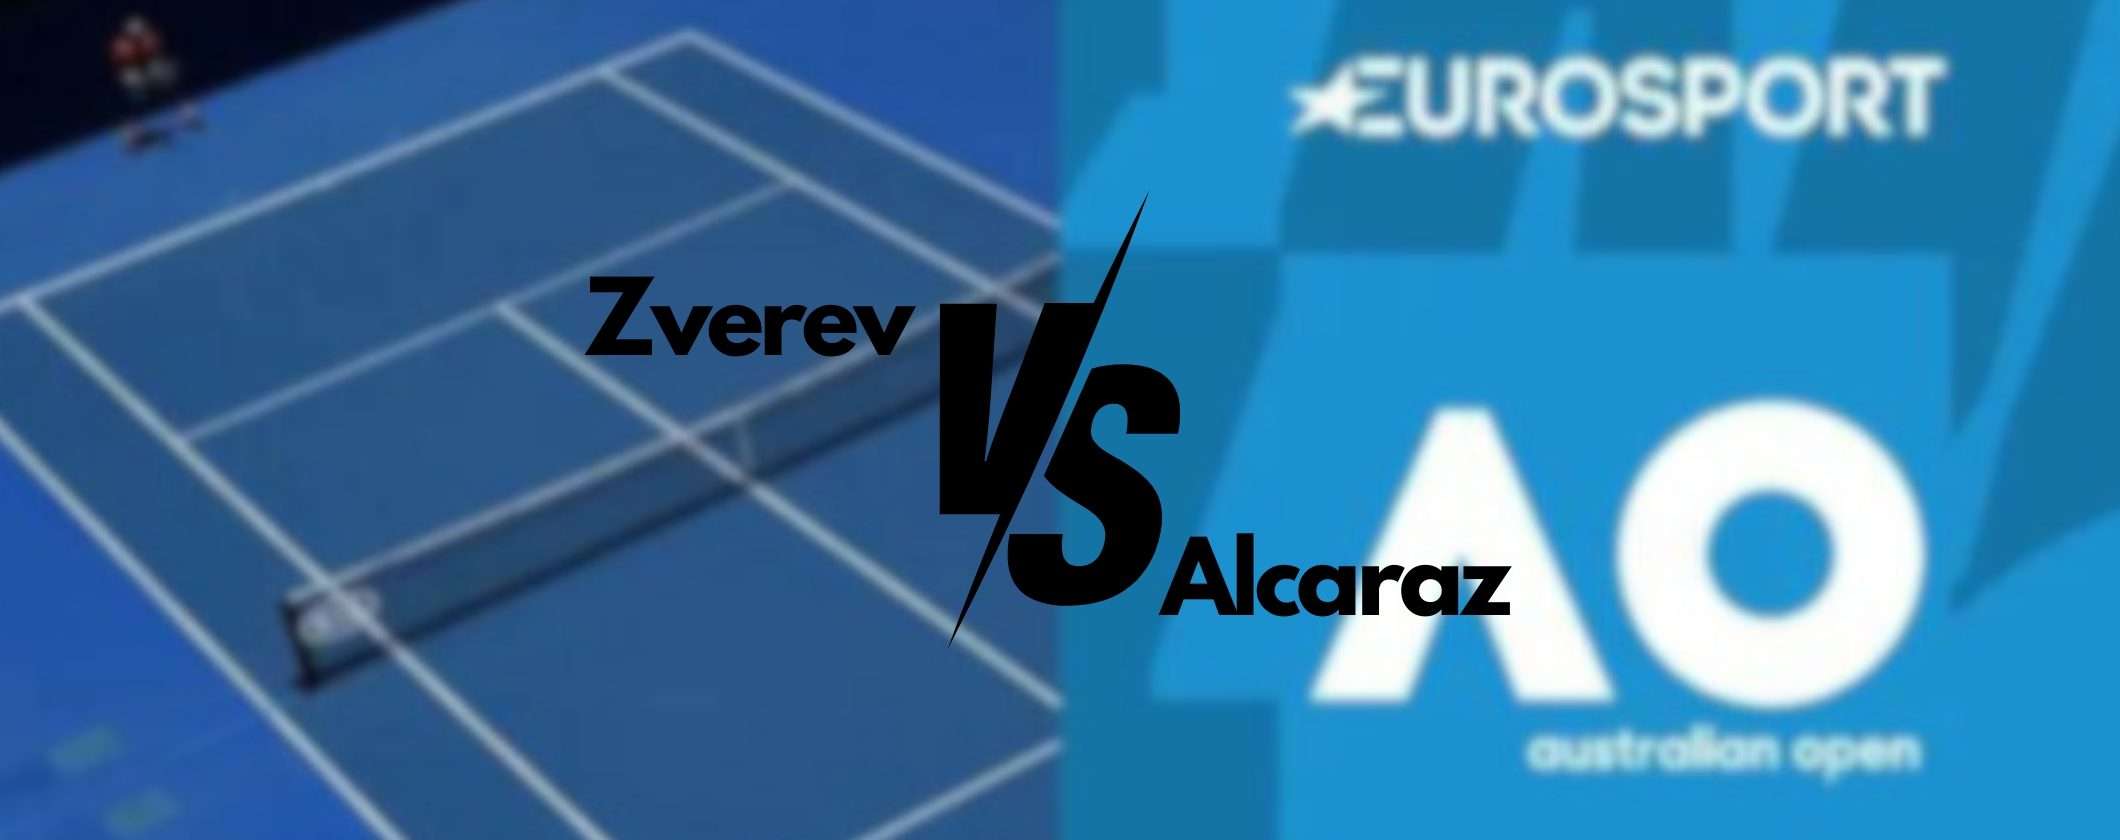 Zverev-Alcaraz: come guardare il match dall'estero in streaming